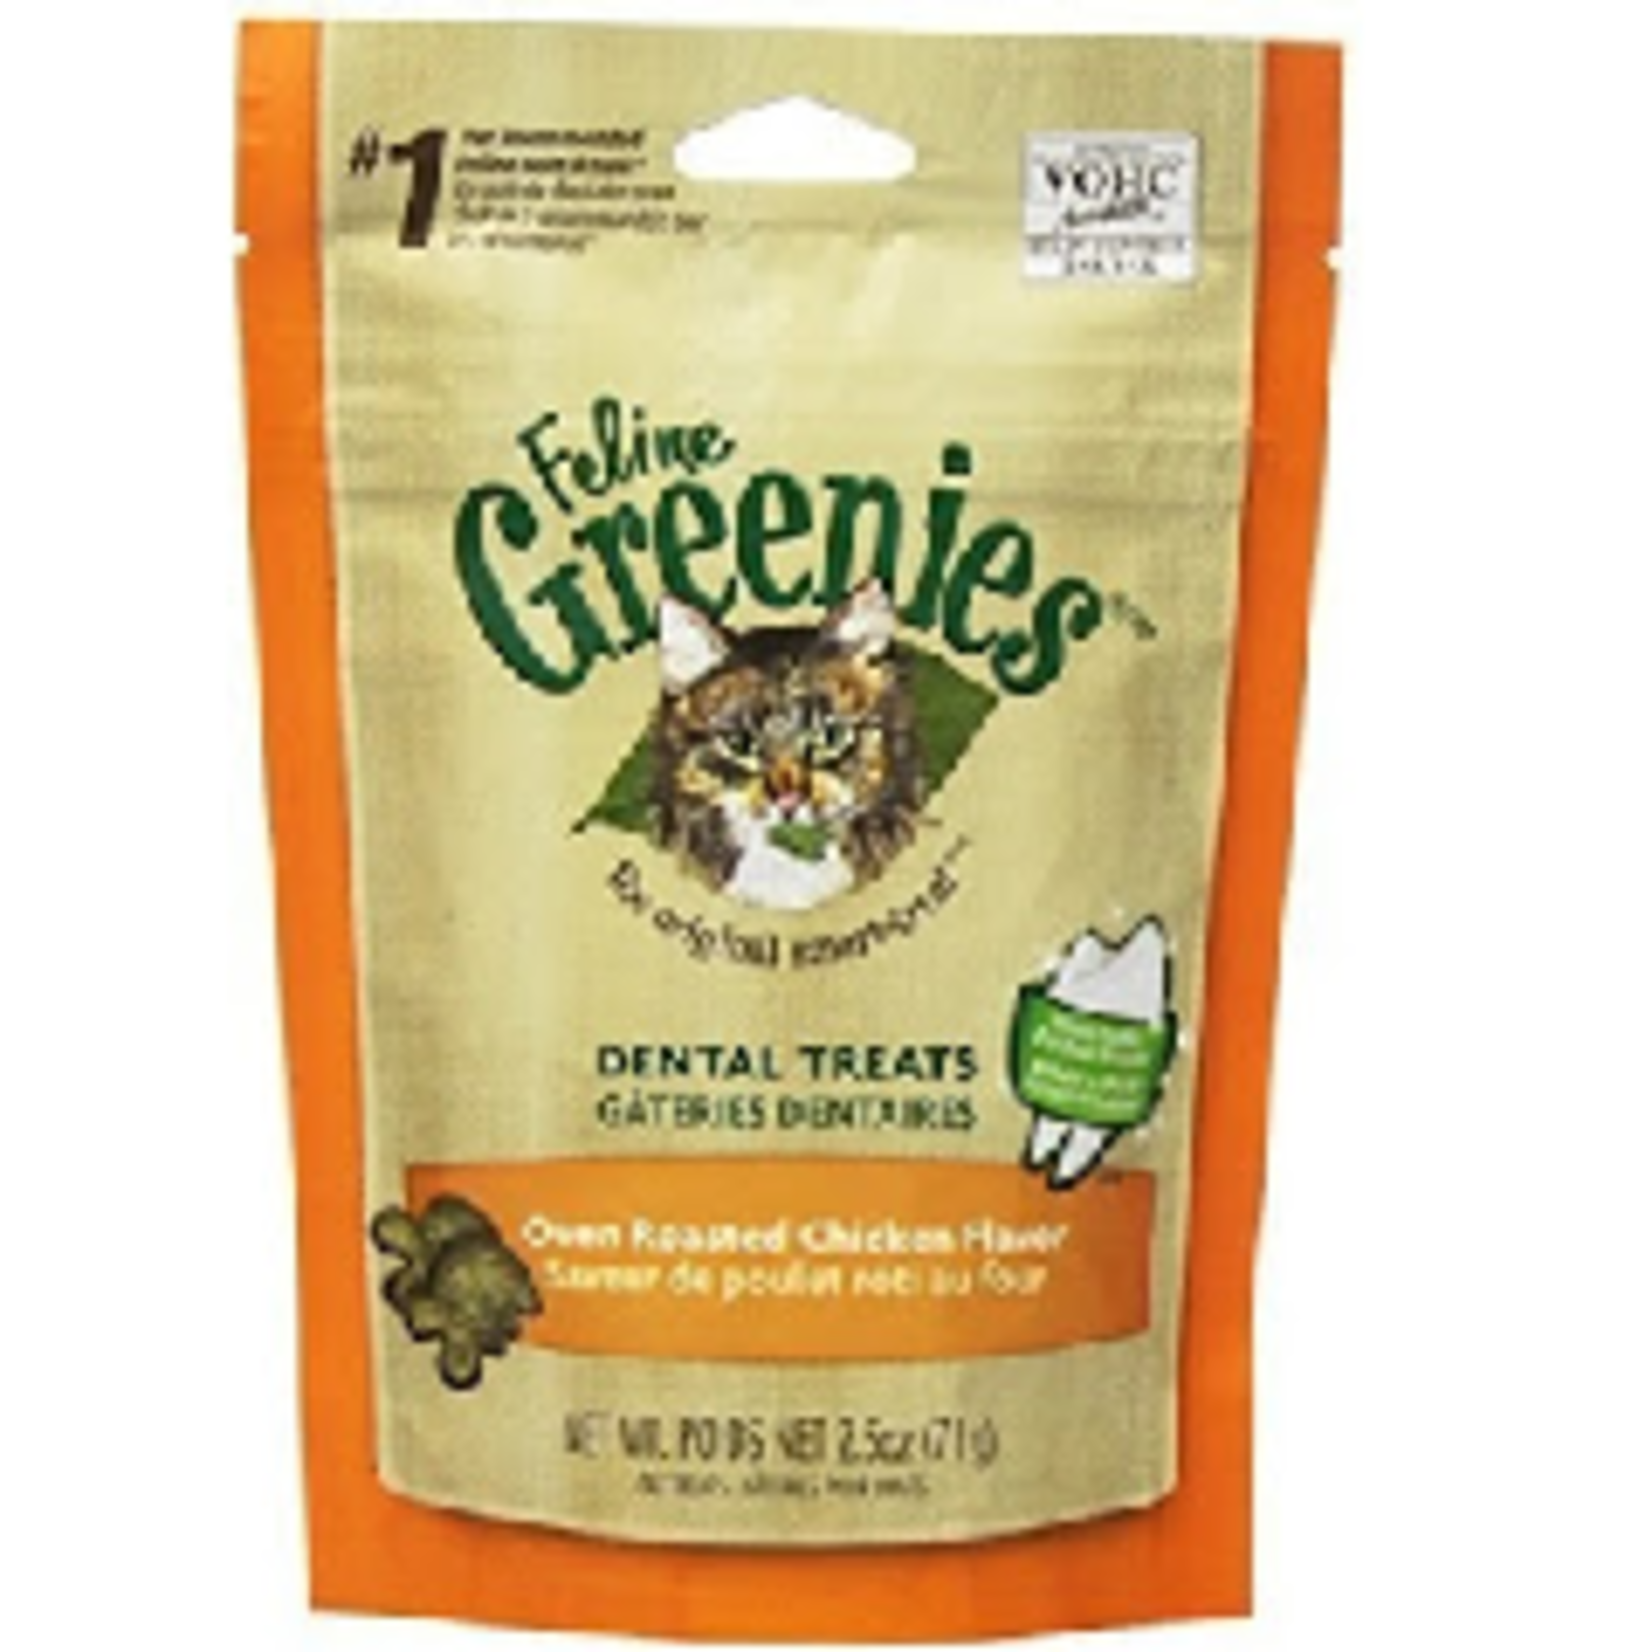 Greenies FELINE GREENIES Flavored Dental Treats